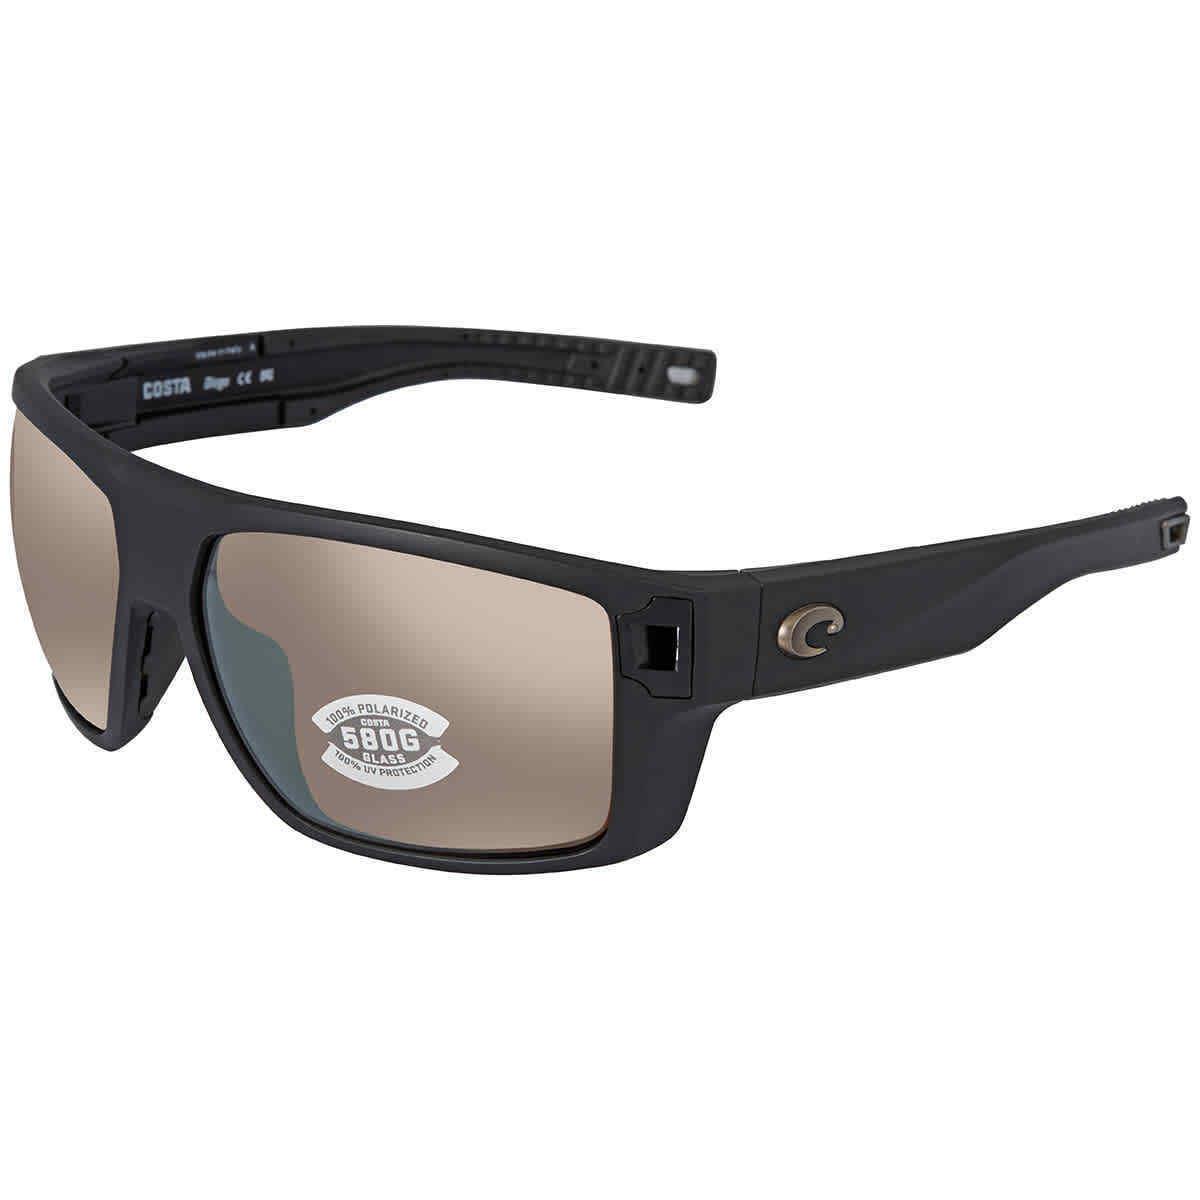 Costa Del Mar Diego Copper Silver Mirror Polarized Glass Men`s Sunglasses Dgo 11 - Frame: Black, Lens: Gray